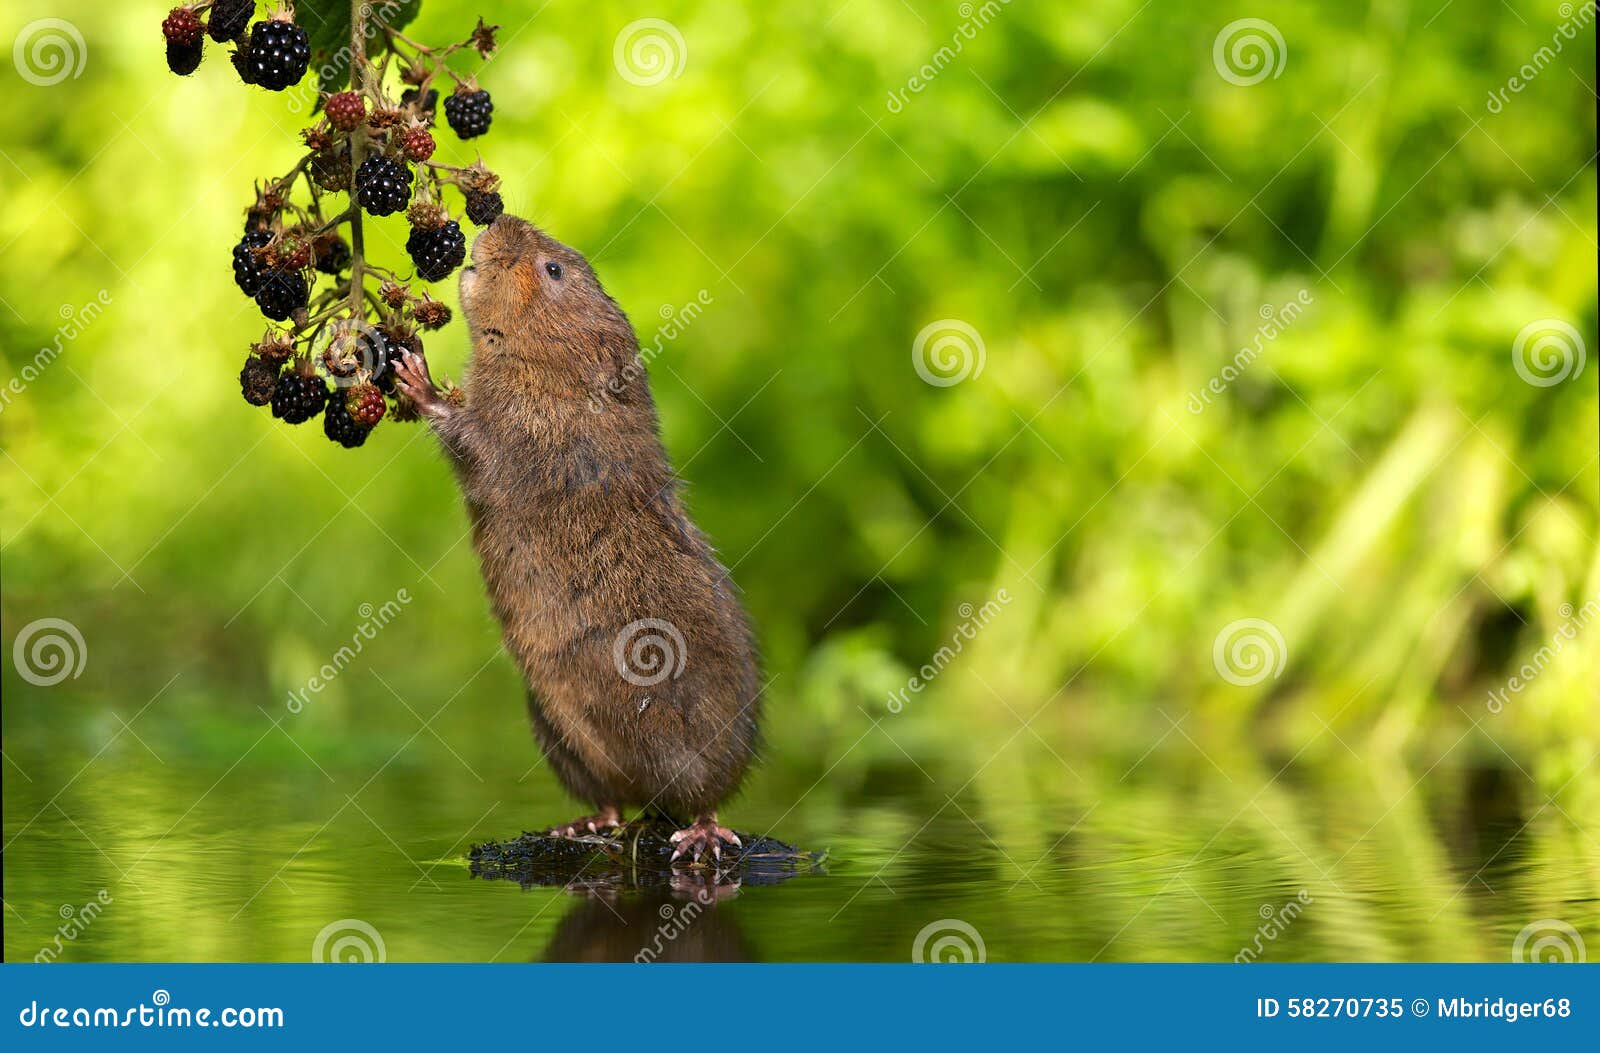 water vole blackberry picking